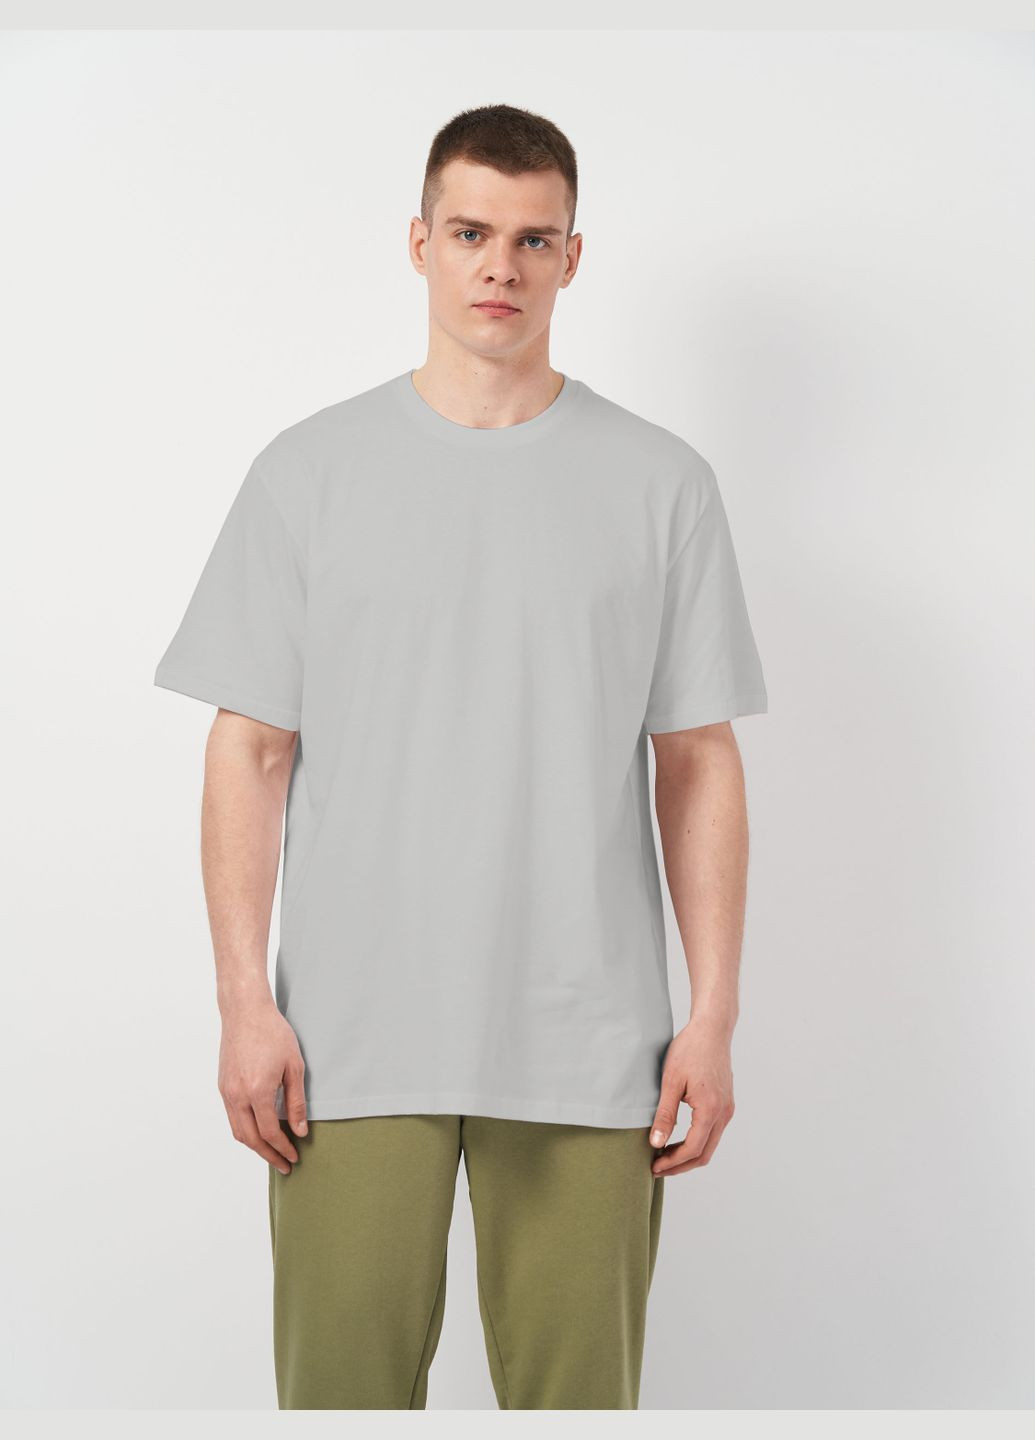 Світло-сіра футболка для чоловіків базова з коротким рукавом Роза